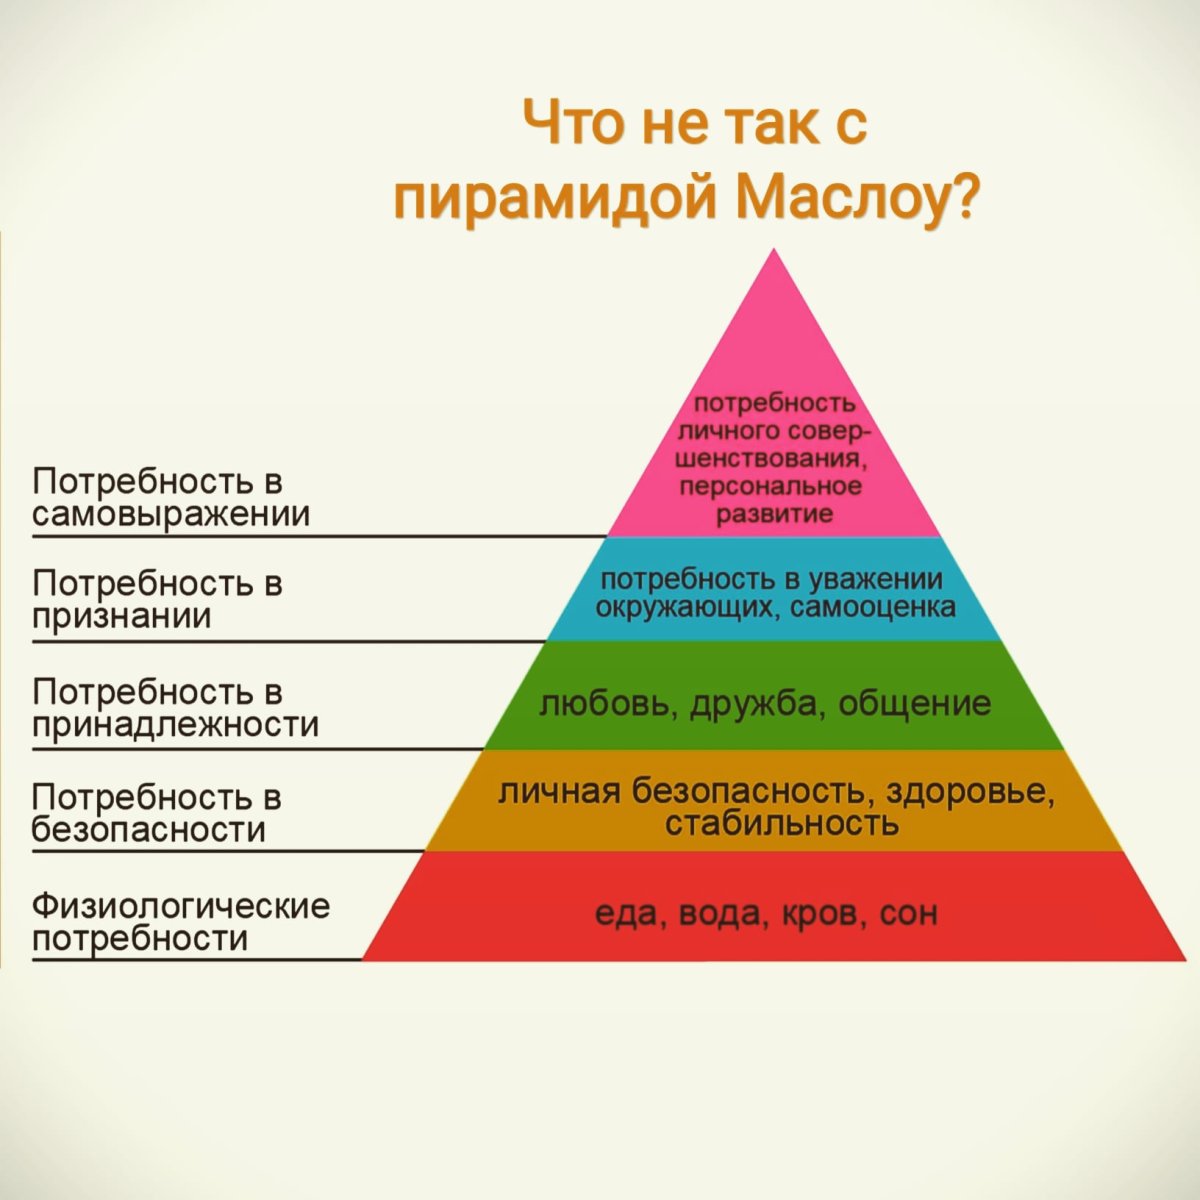 Потребность в труде это социальная потребность. Абрахам Маслоу потребности. Треугольник потребностей Маслоу. Пирамида потребностей человека Абрахама Маслоу. Пирамида Маслоу 7 уровней.